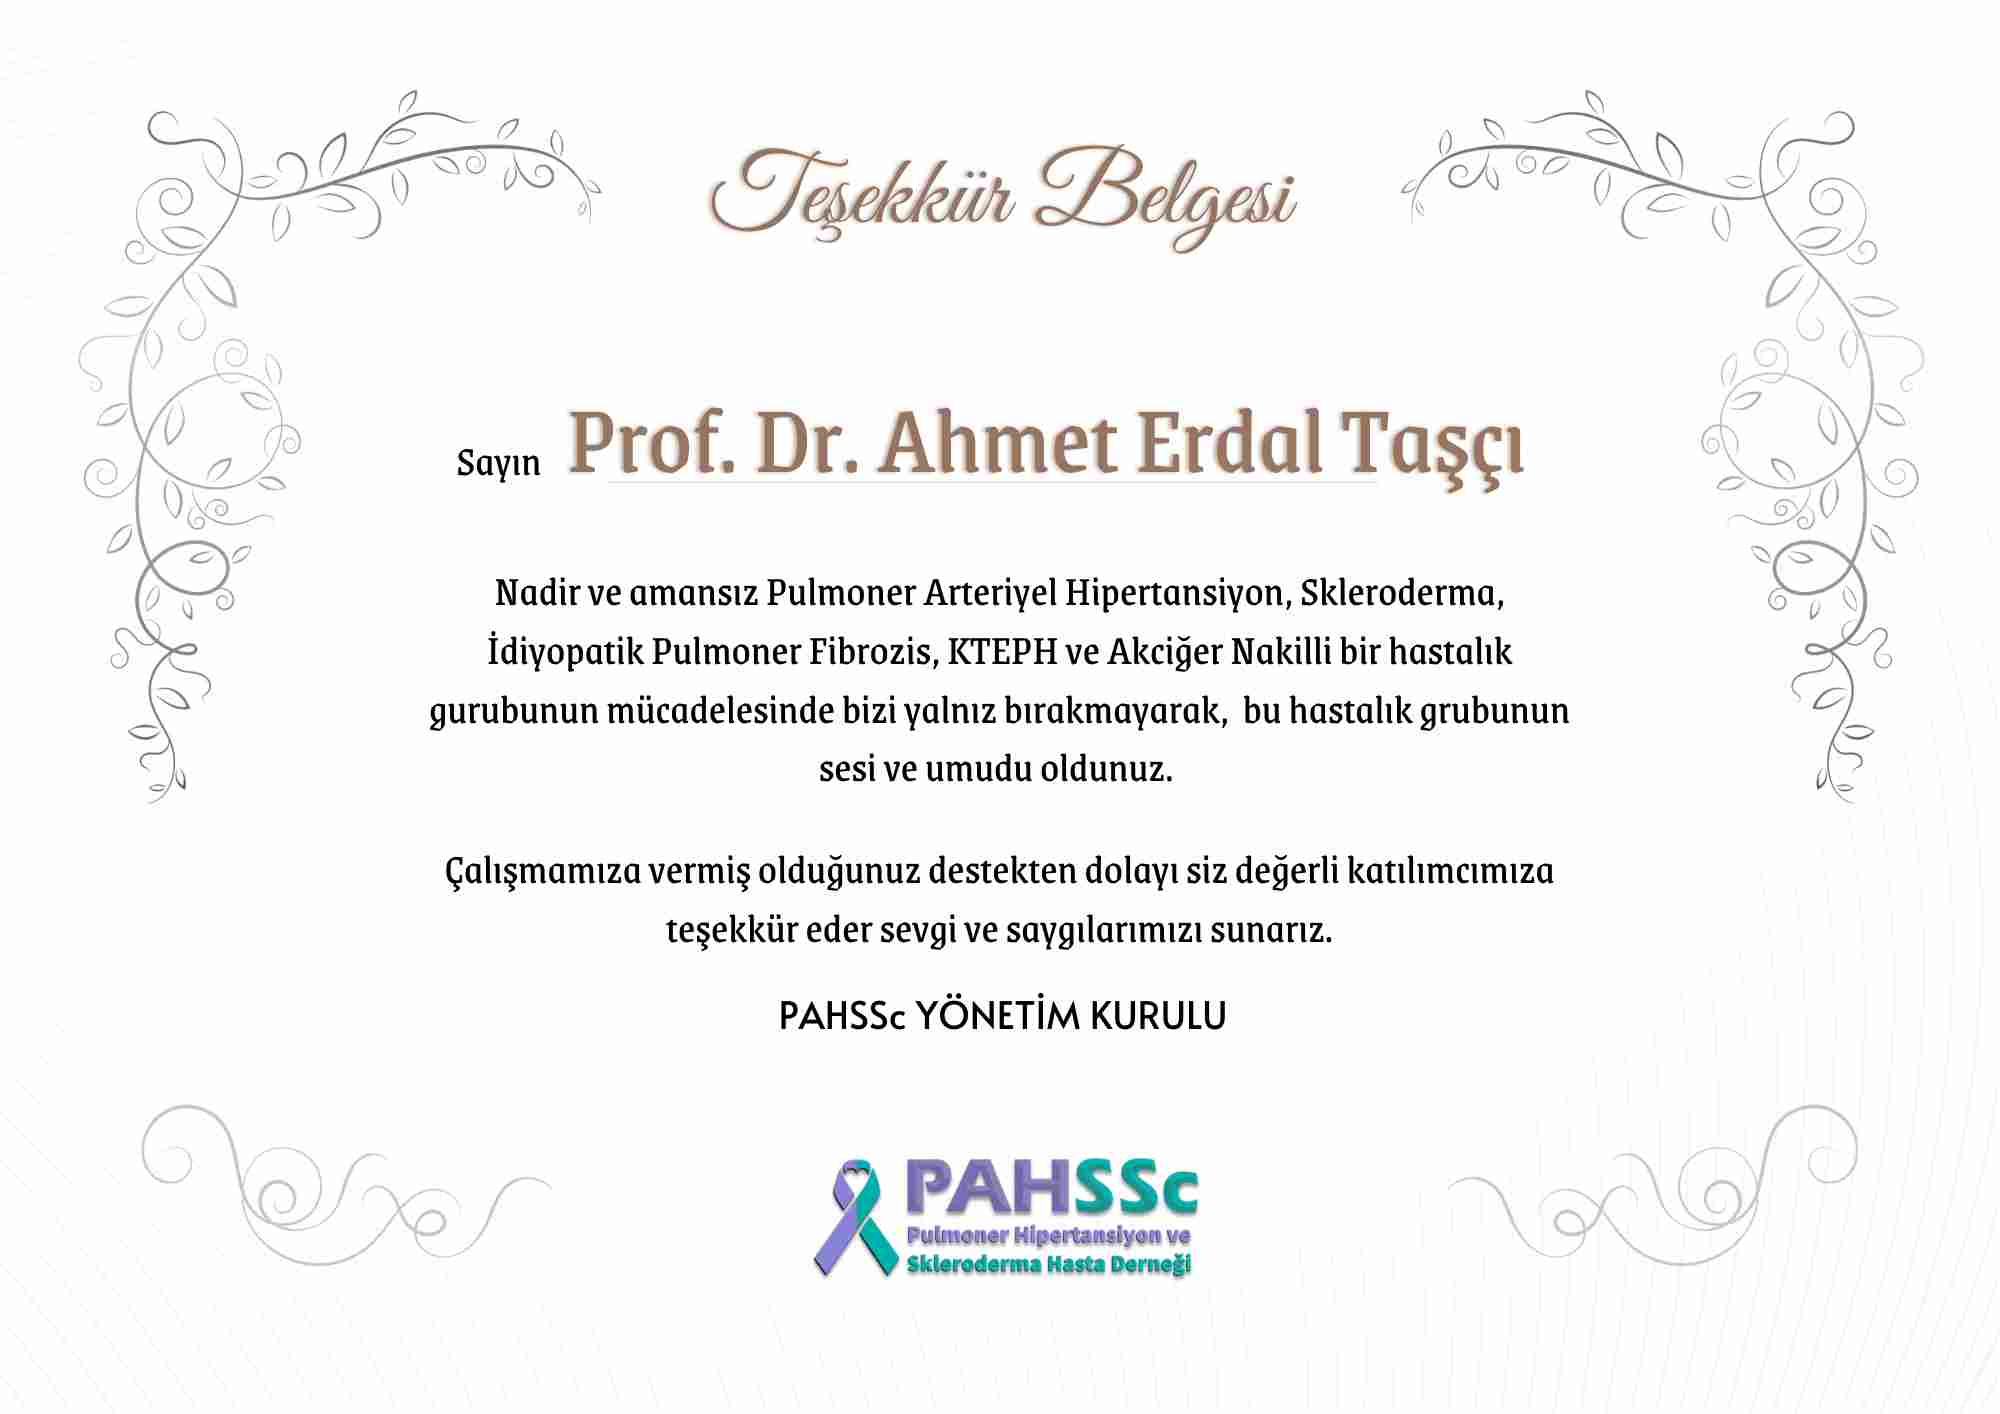 Prof. Dr. Ahmet Erdal Taşçı